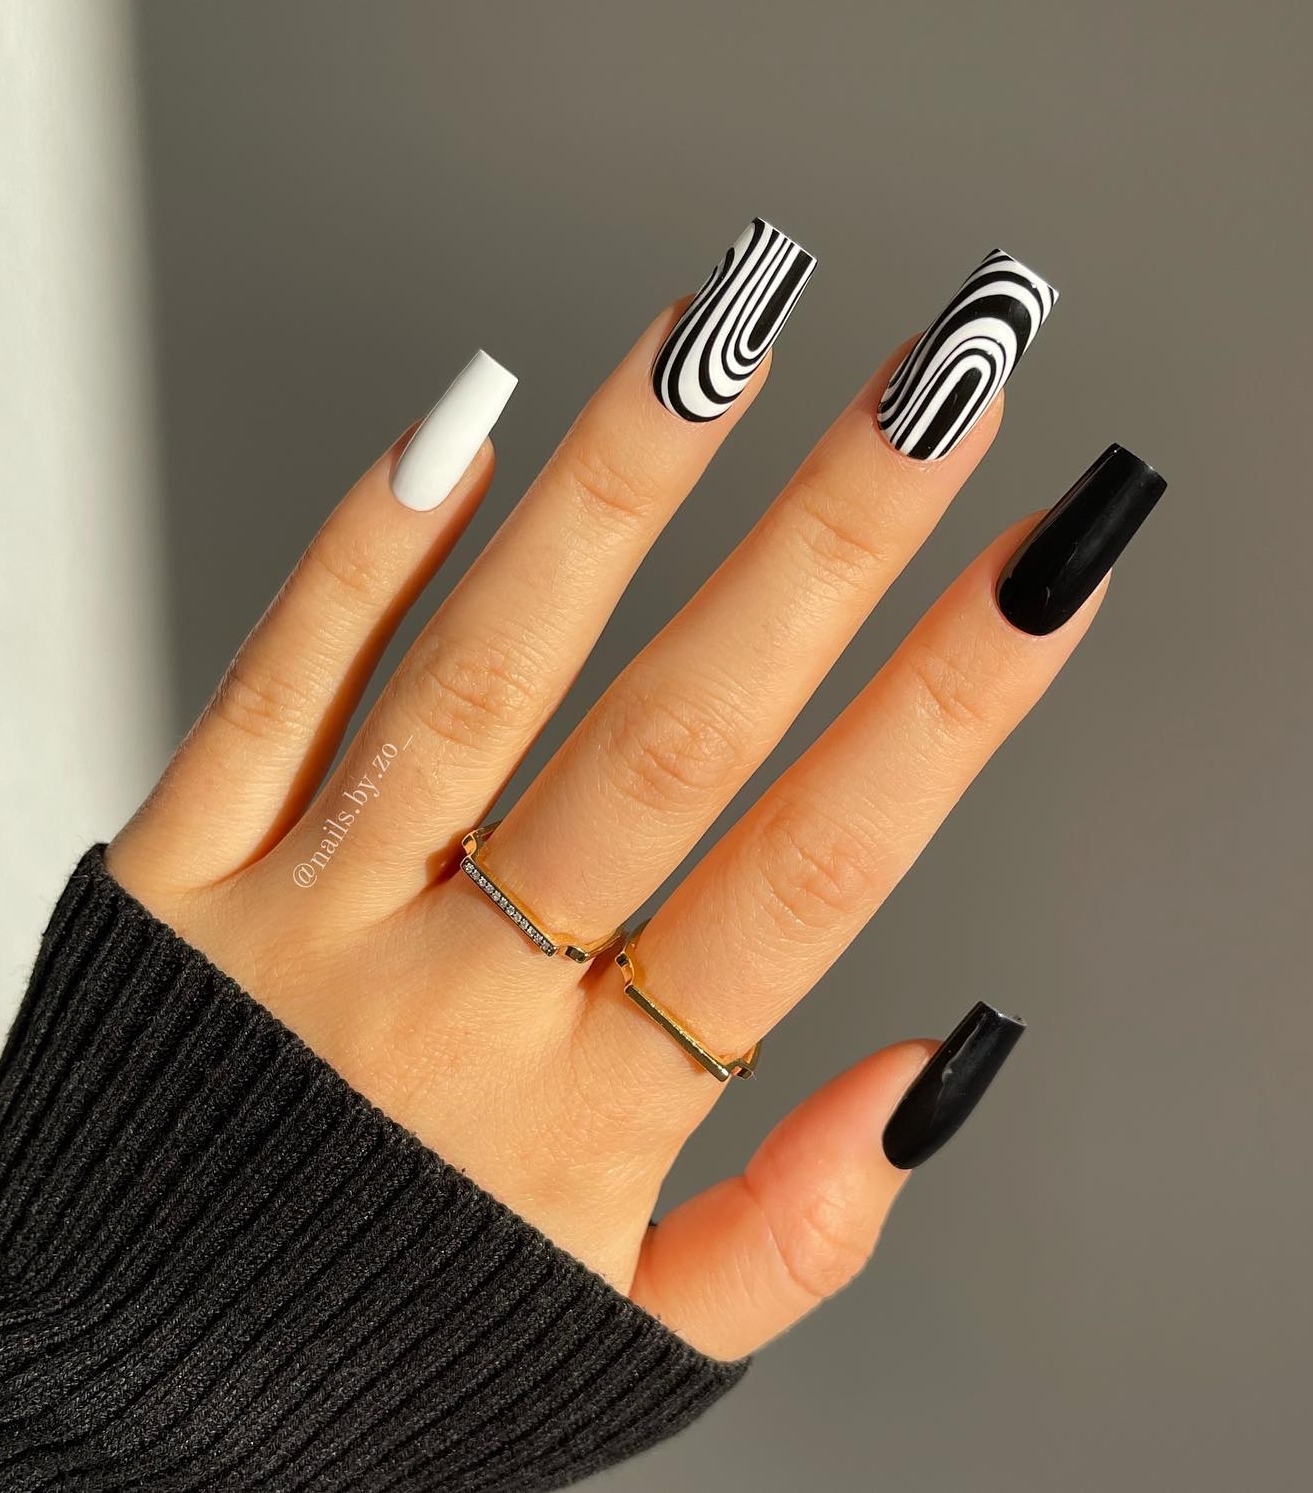 Lange vierkante nagels met geometrisch zwart-wit ontwerp